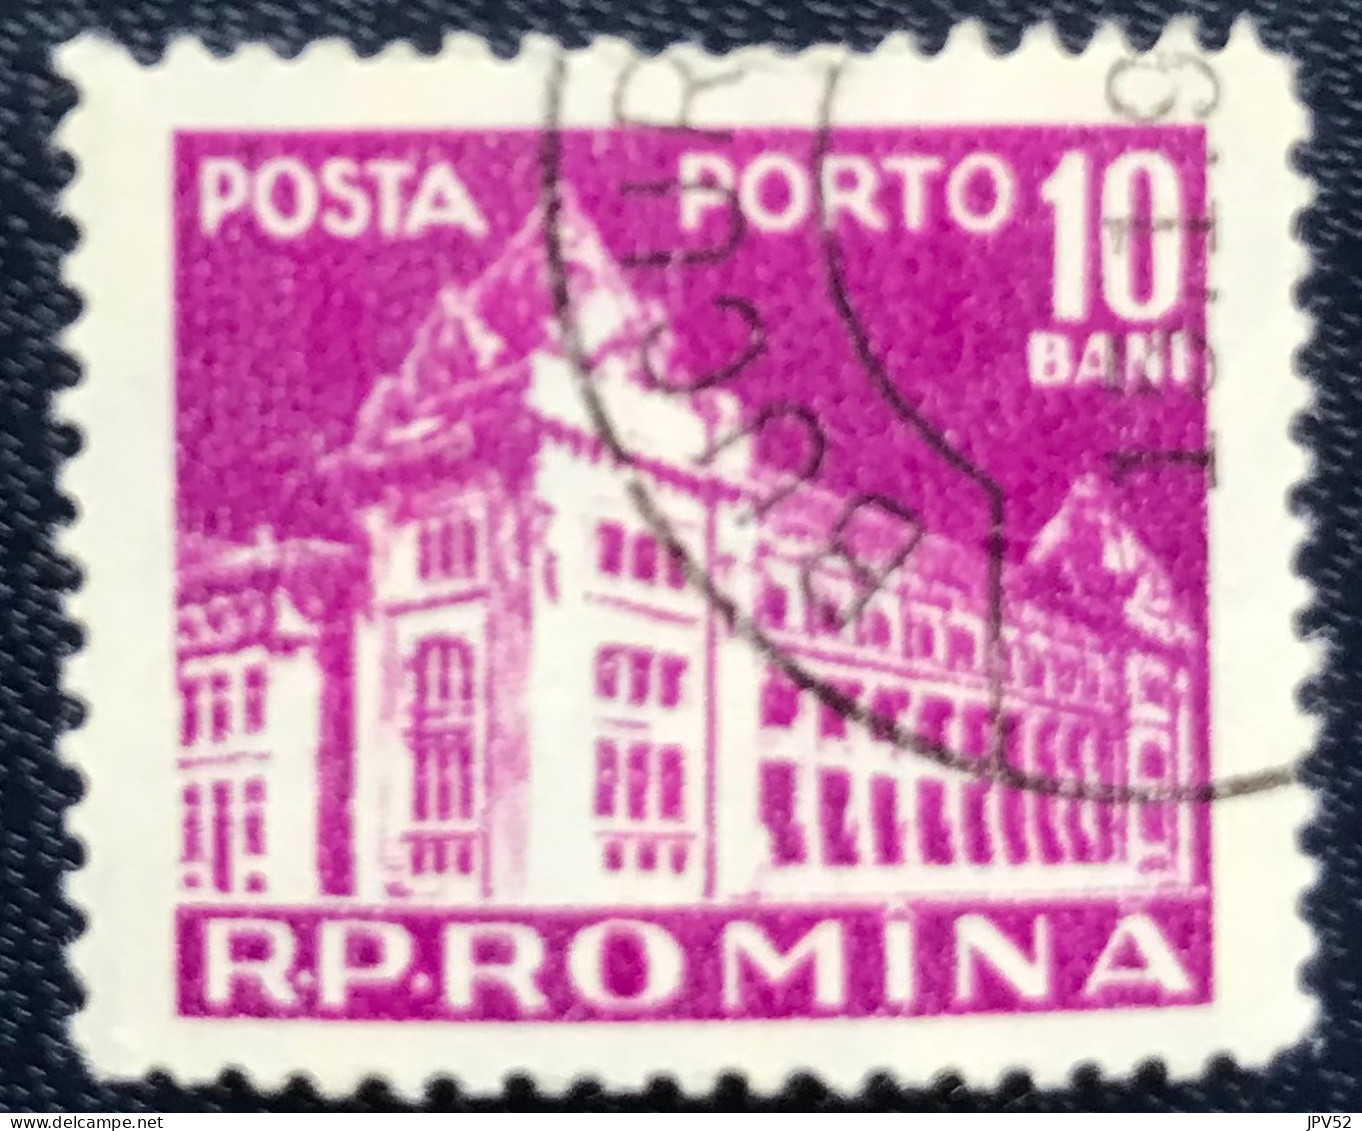 Romana - Roemenië - C14/54 - 1957 - (°)used - Michel 103 - Postkantoor - Impuestos